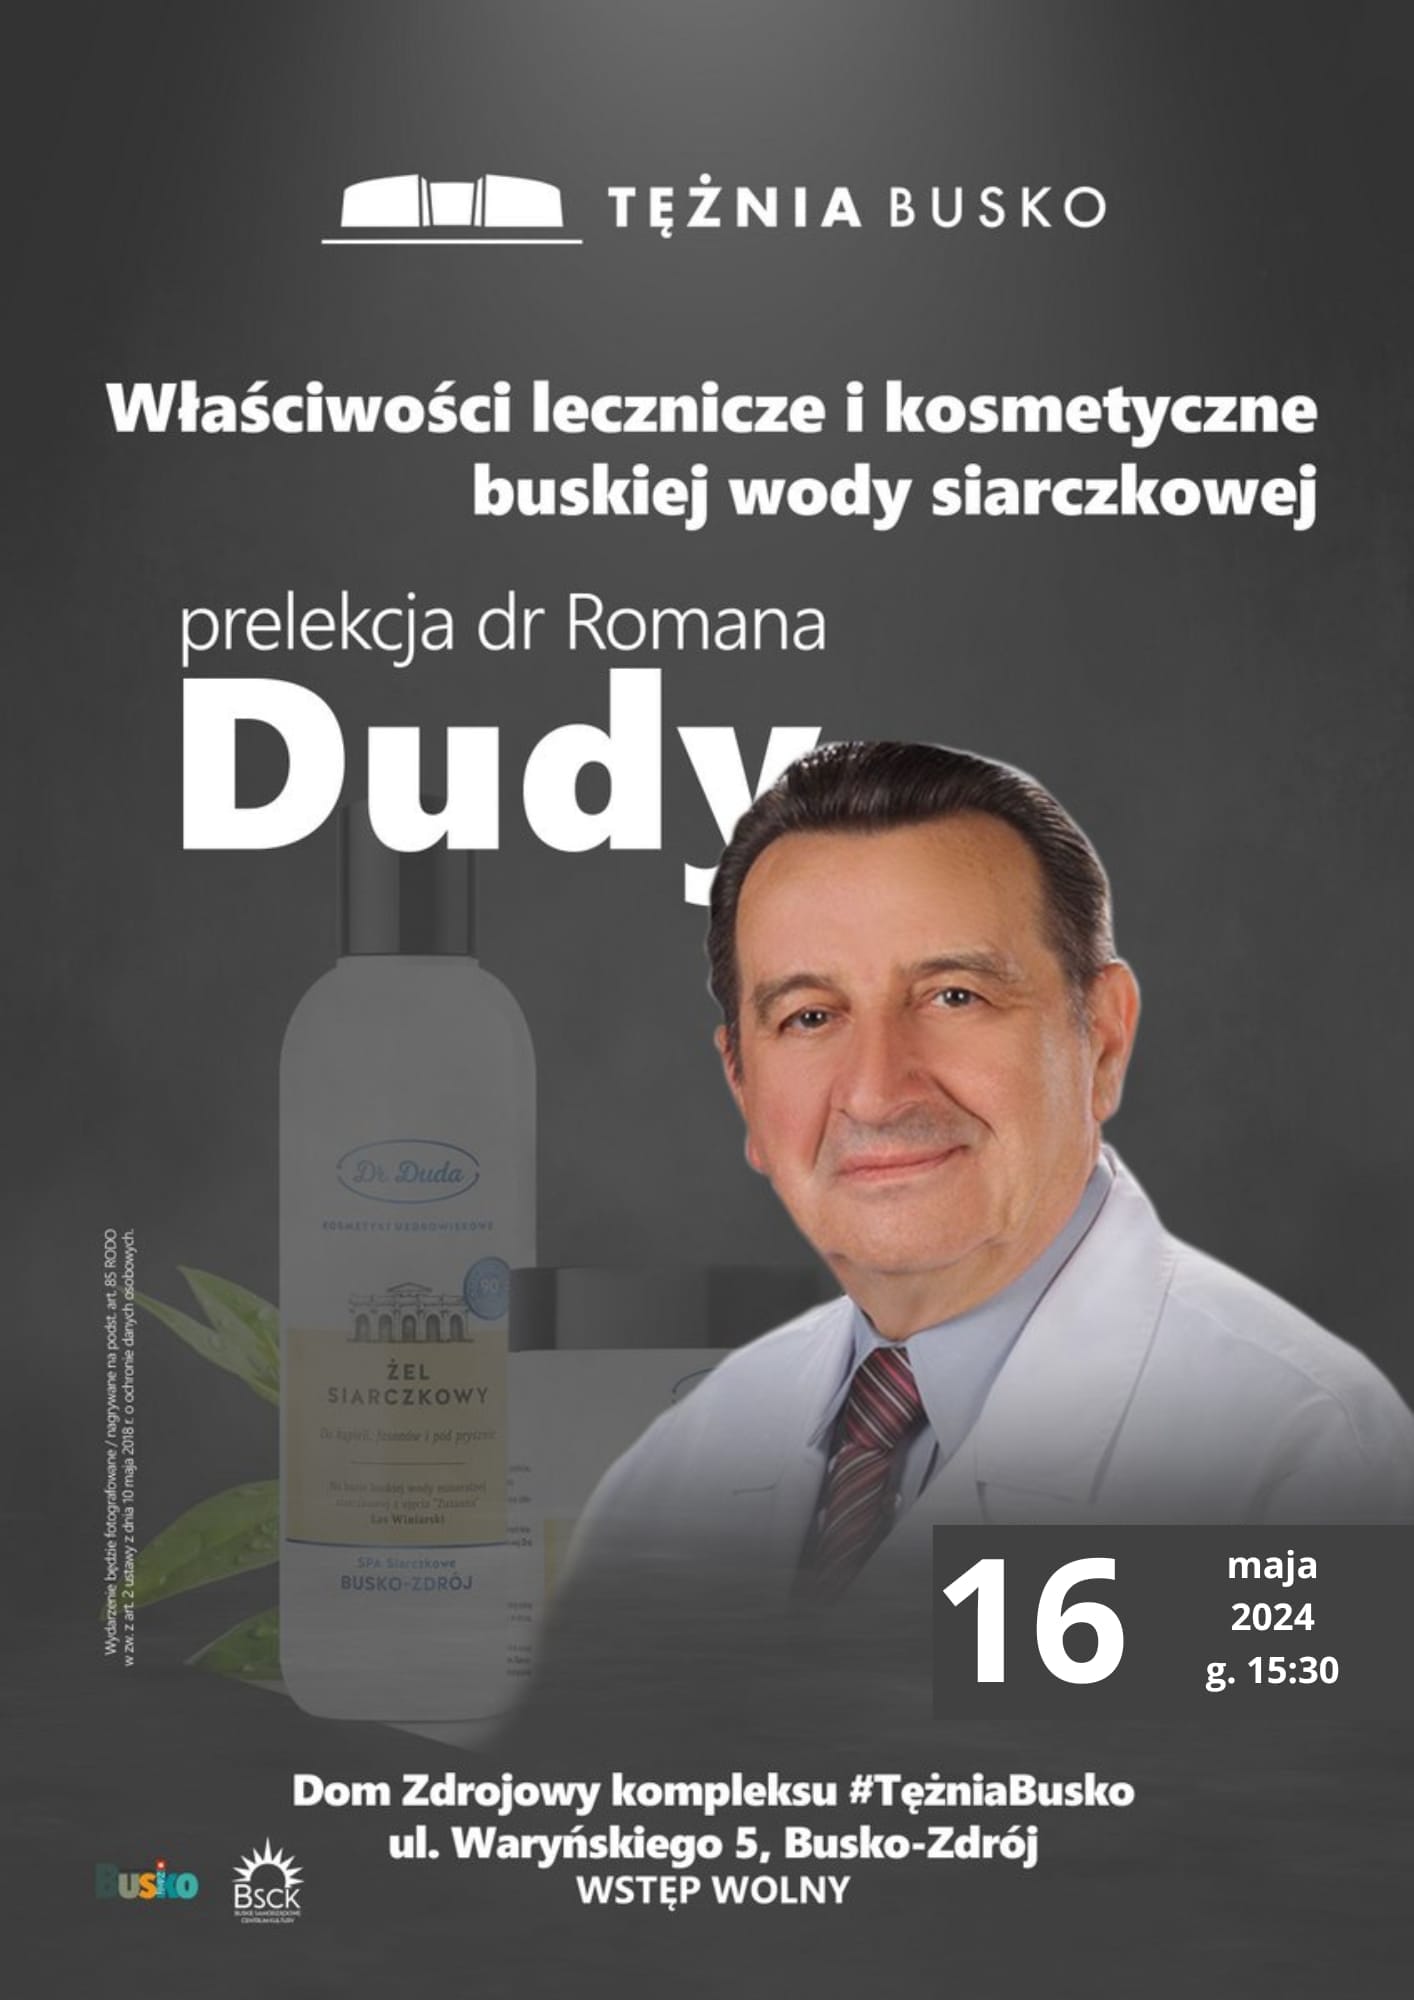 plakat promujący spotkanie z dr Dudą